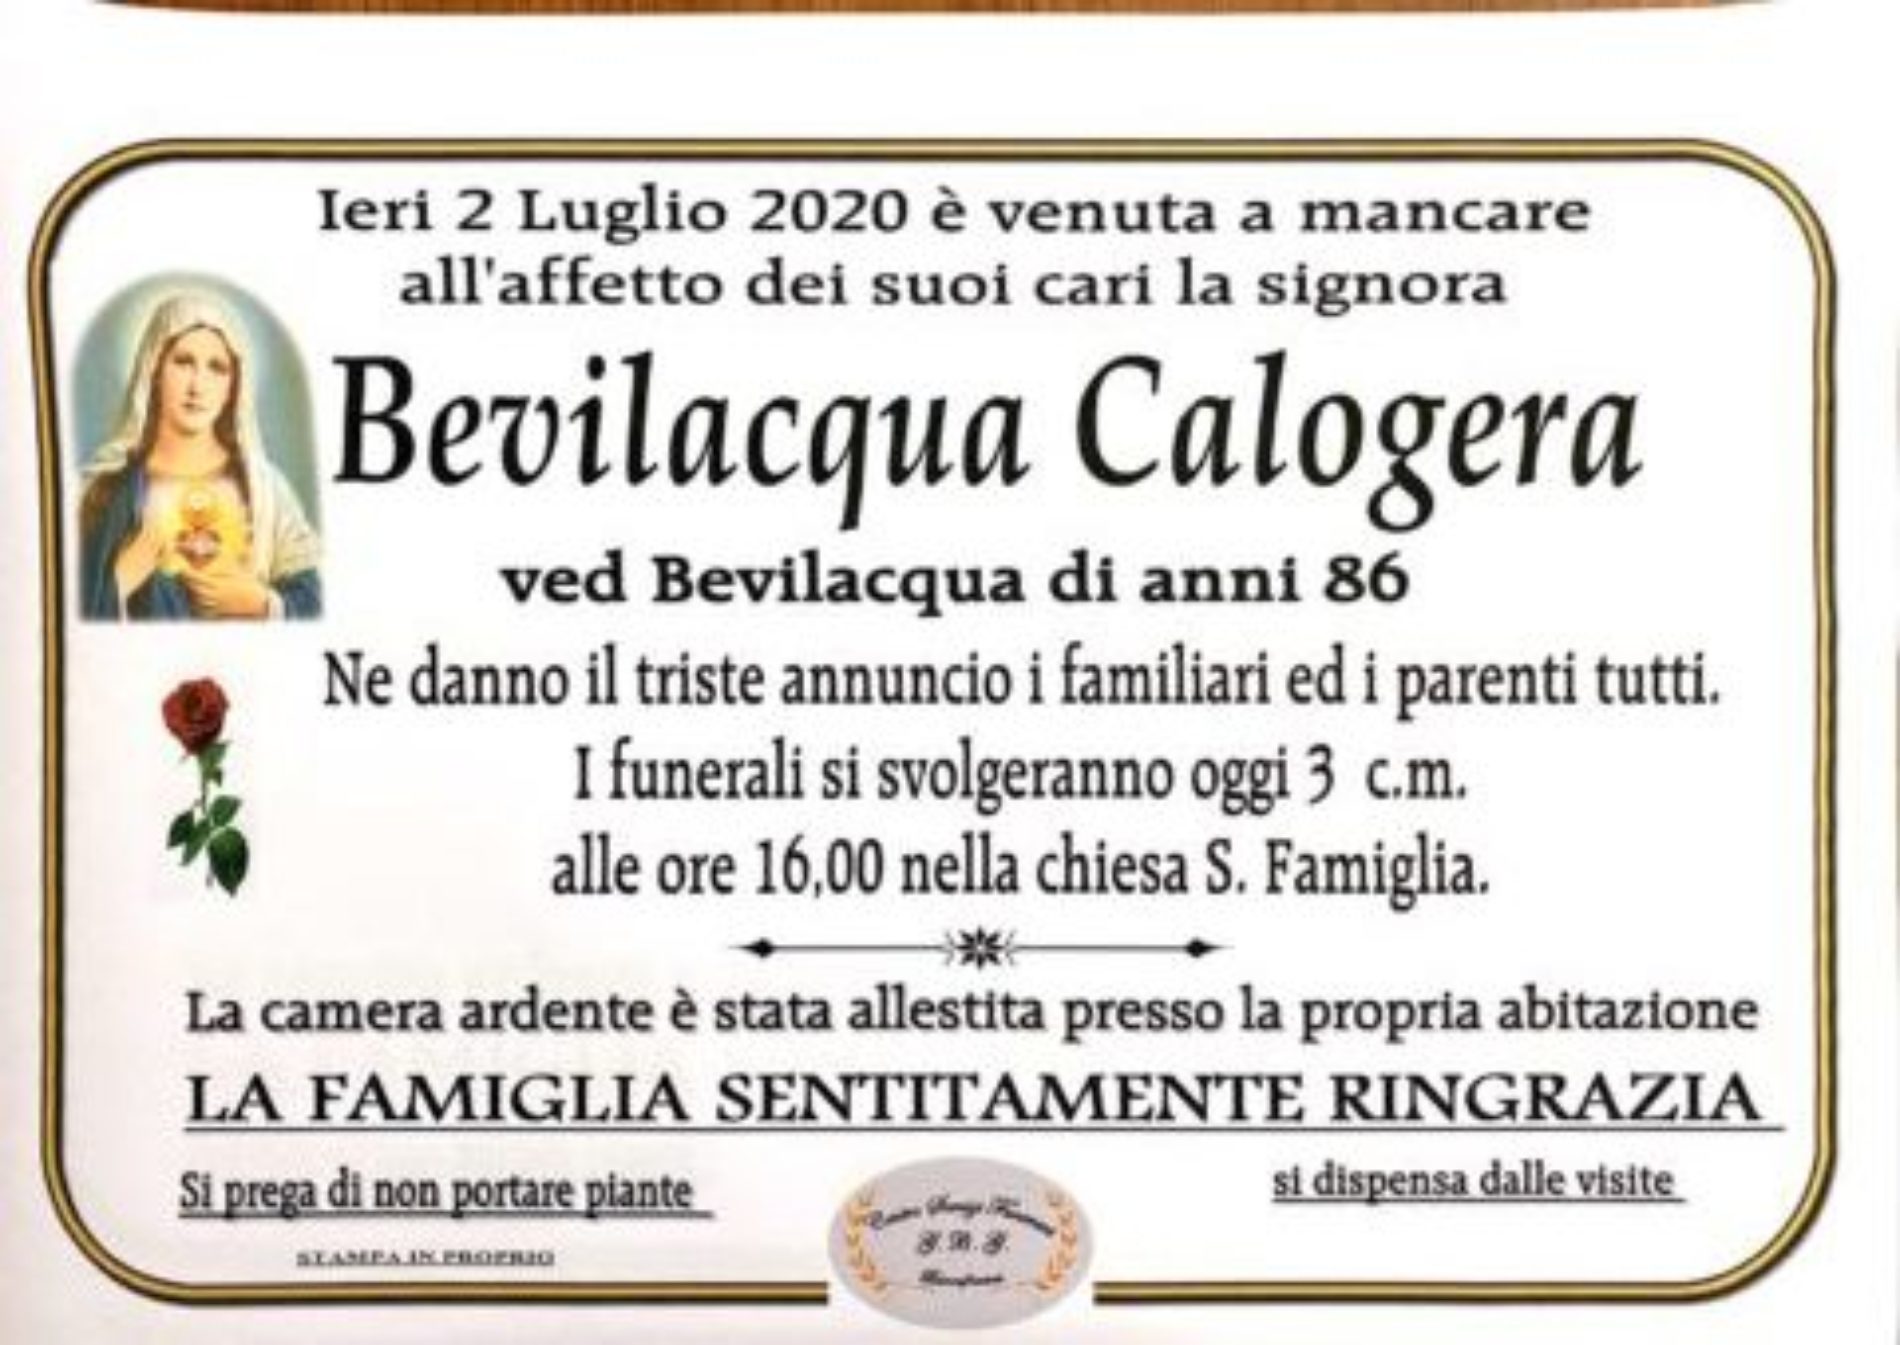 Annuncio Centro servizi funerari G.B.G. Bevilacqua Calogera ved Bevilacqua anni 86